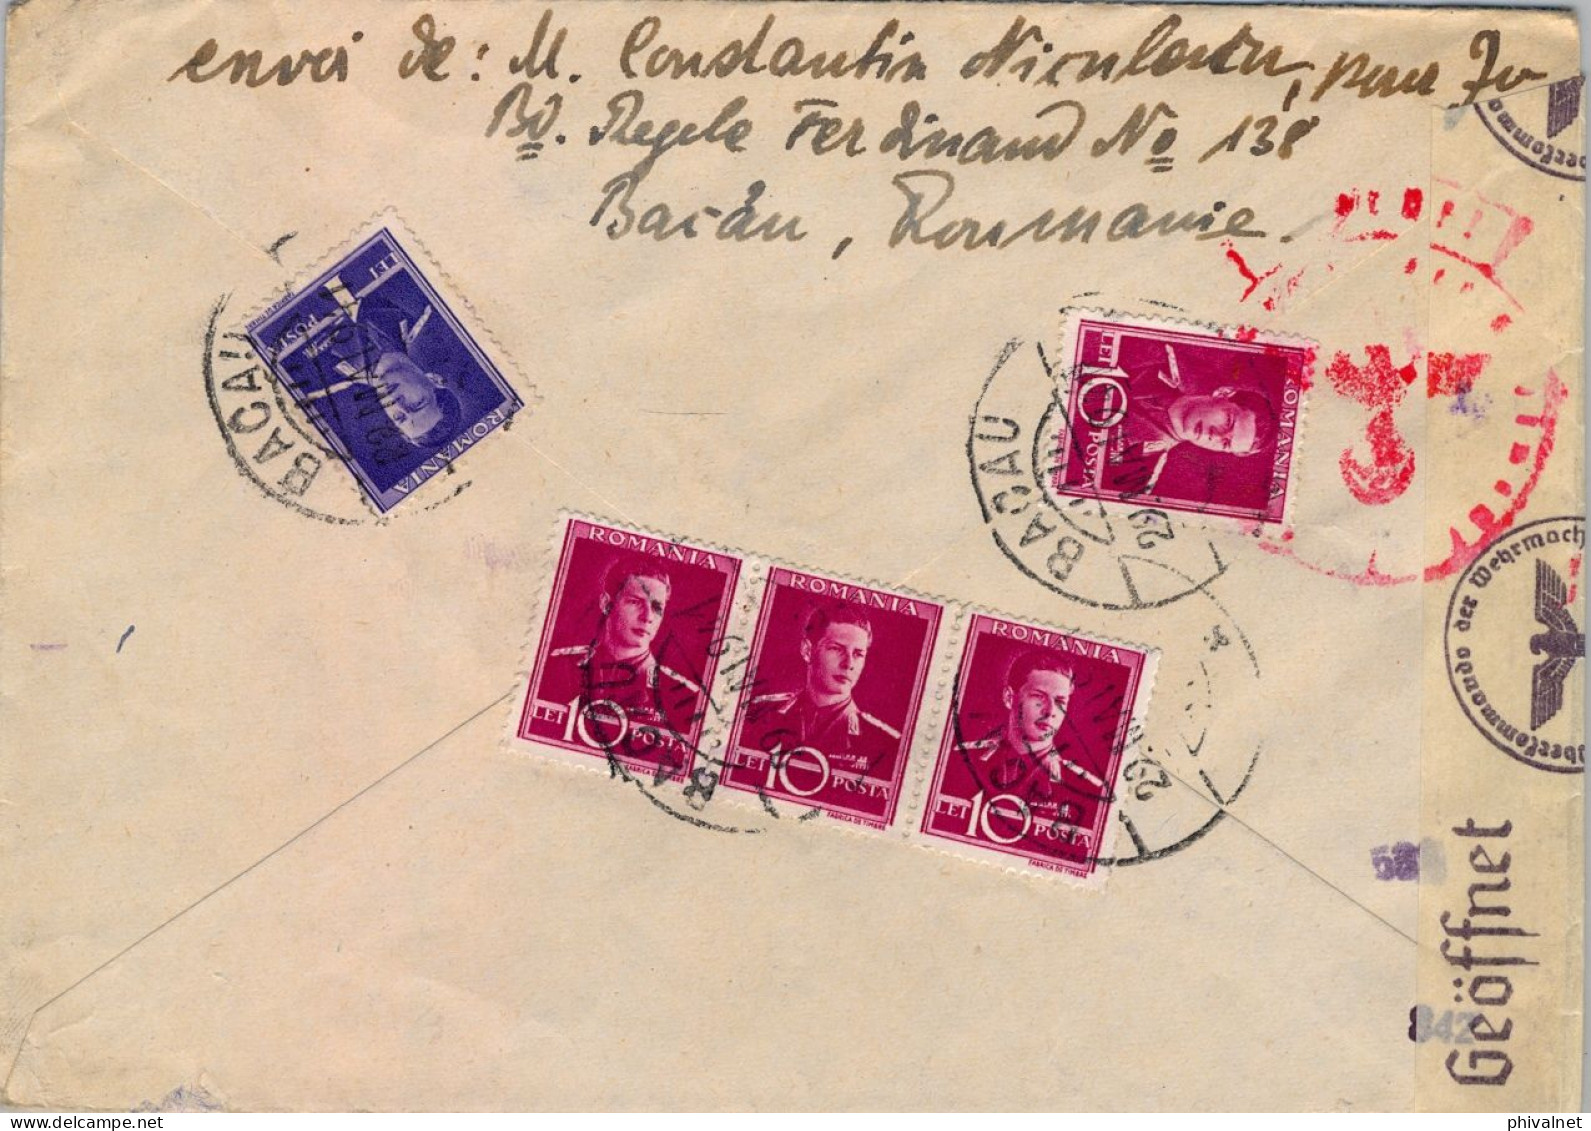 1941 RUMANIA / ROMANIA , SOBRE CIRCULADO , BACAU - BERLIN , CORREO AÉREO , CENSURA , FR. COMPLEMENTARIO - Cartas & Documentos